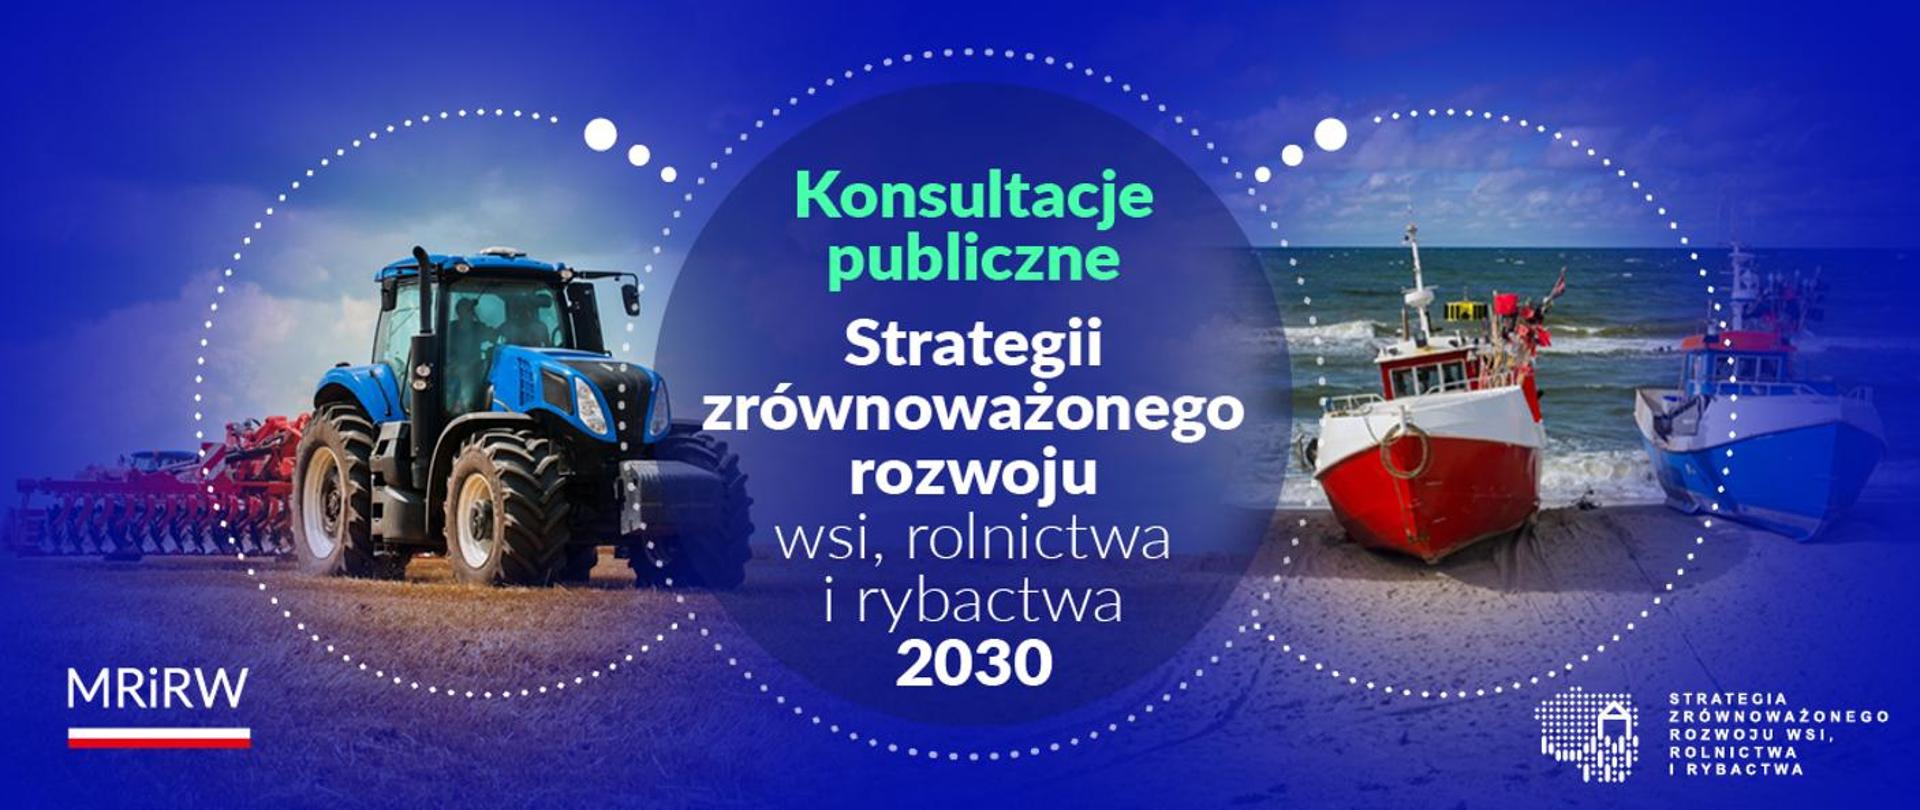 konsultacje publiczne strategii zrównoważonego rozwoju wsi, rolnictwa i rybactwa 2030